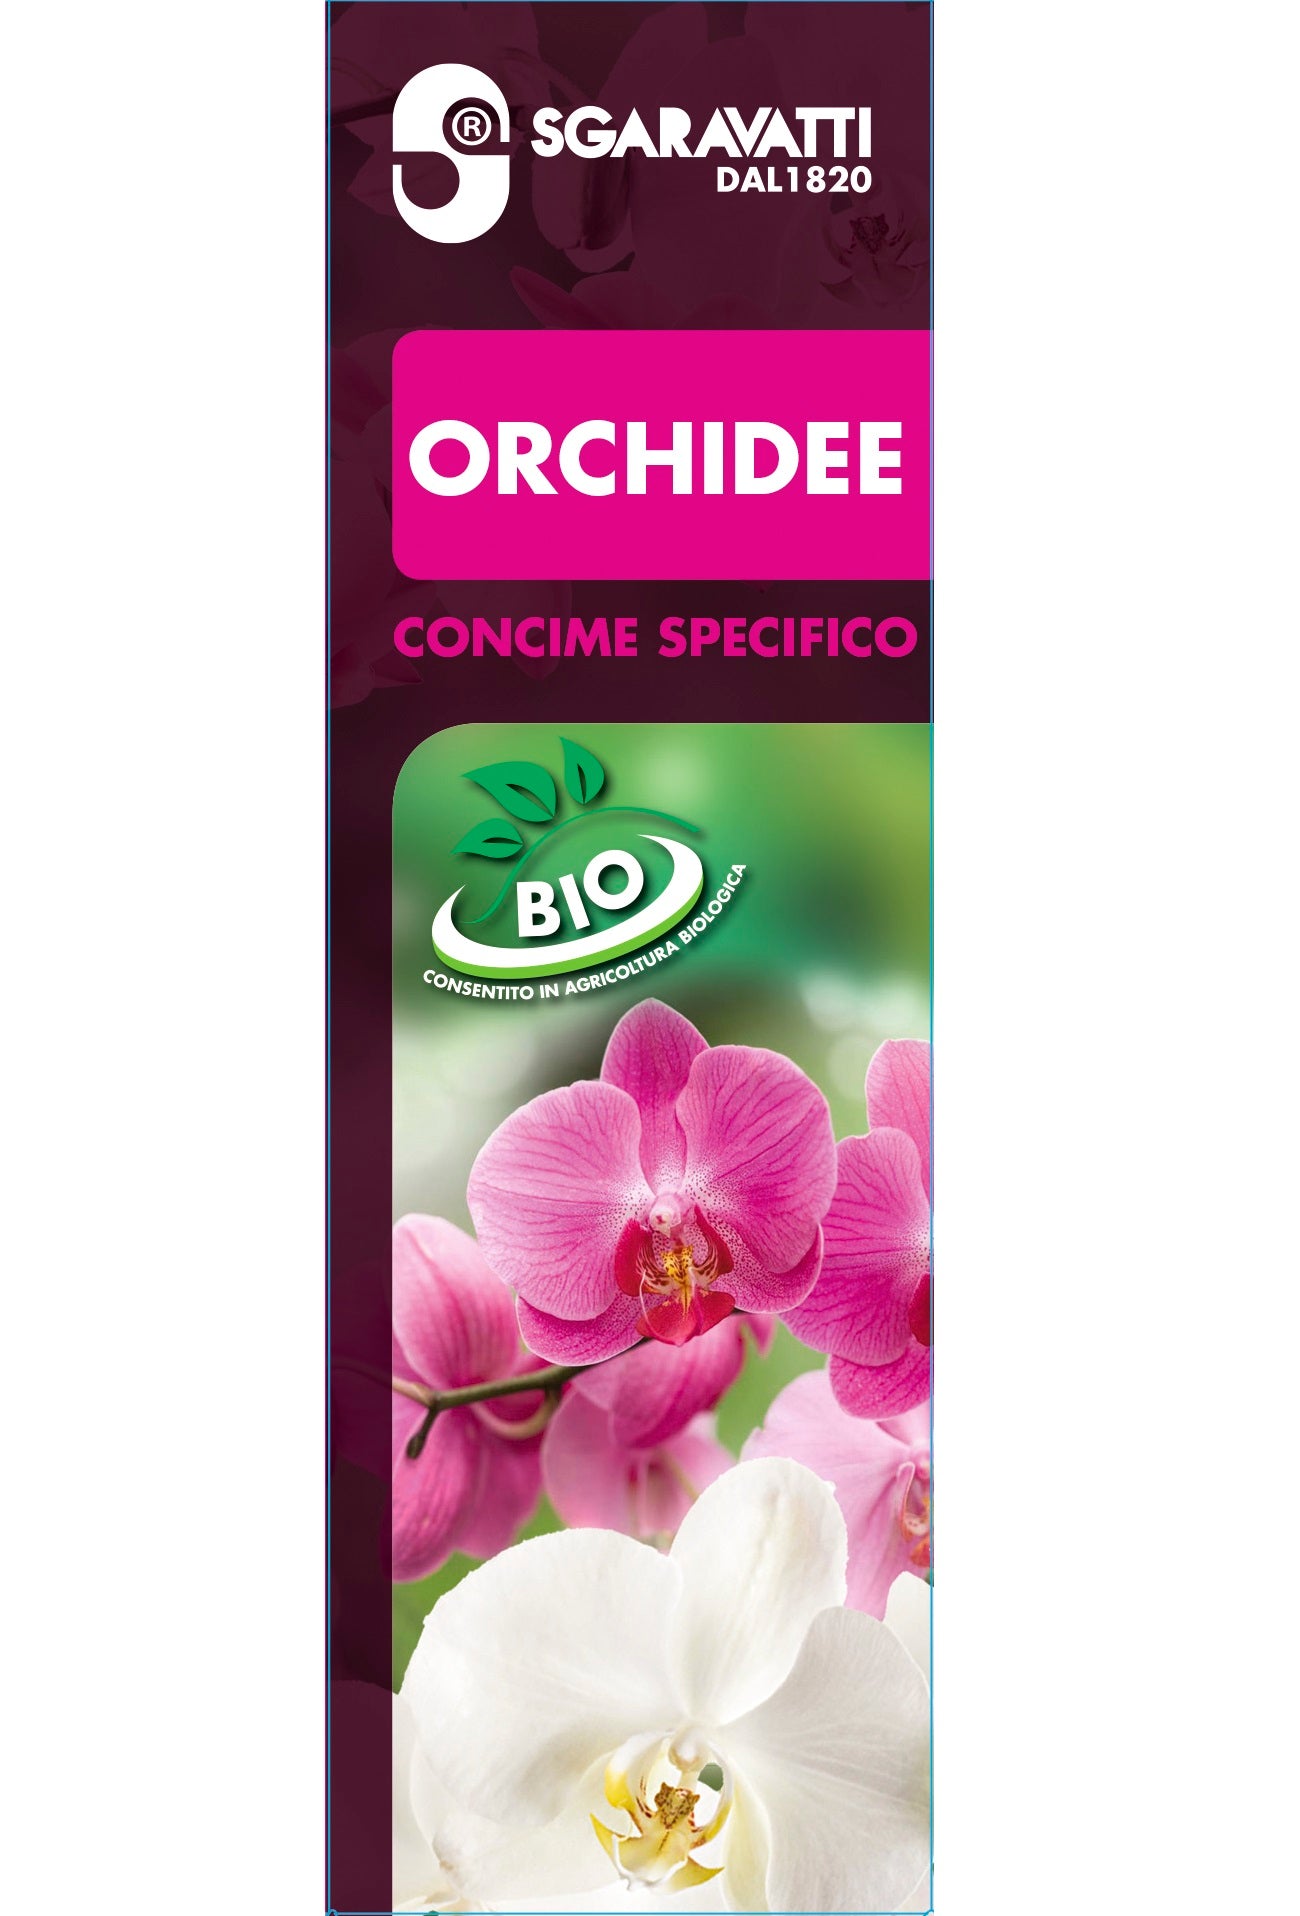 Concime Orchidee BIO. Concime Organico. Acquistalo ora online – Sgaravatti  Shop